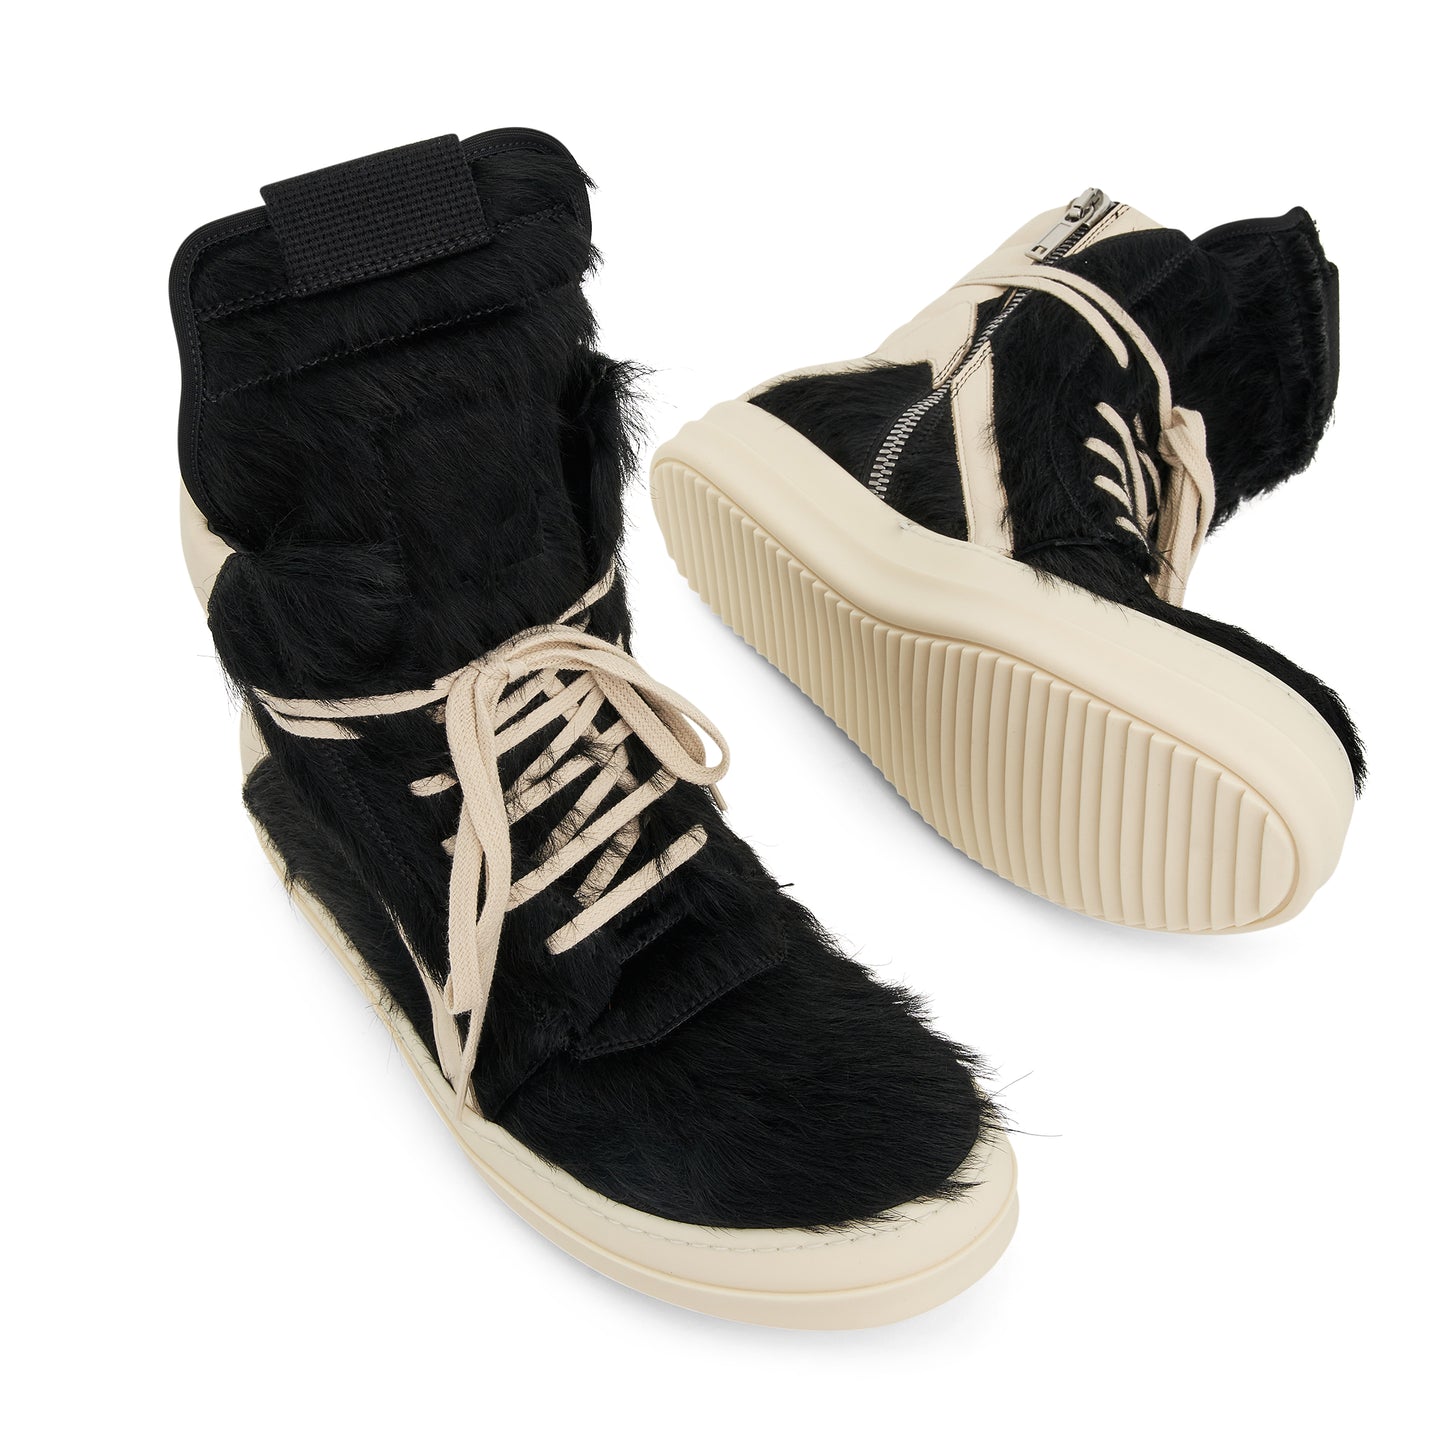 Geobasket Fur Sneaker in Black/Milk